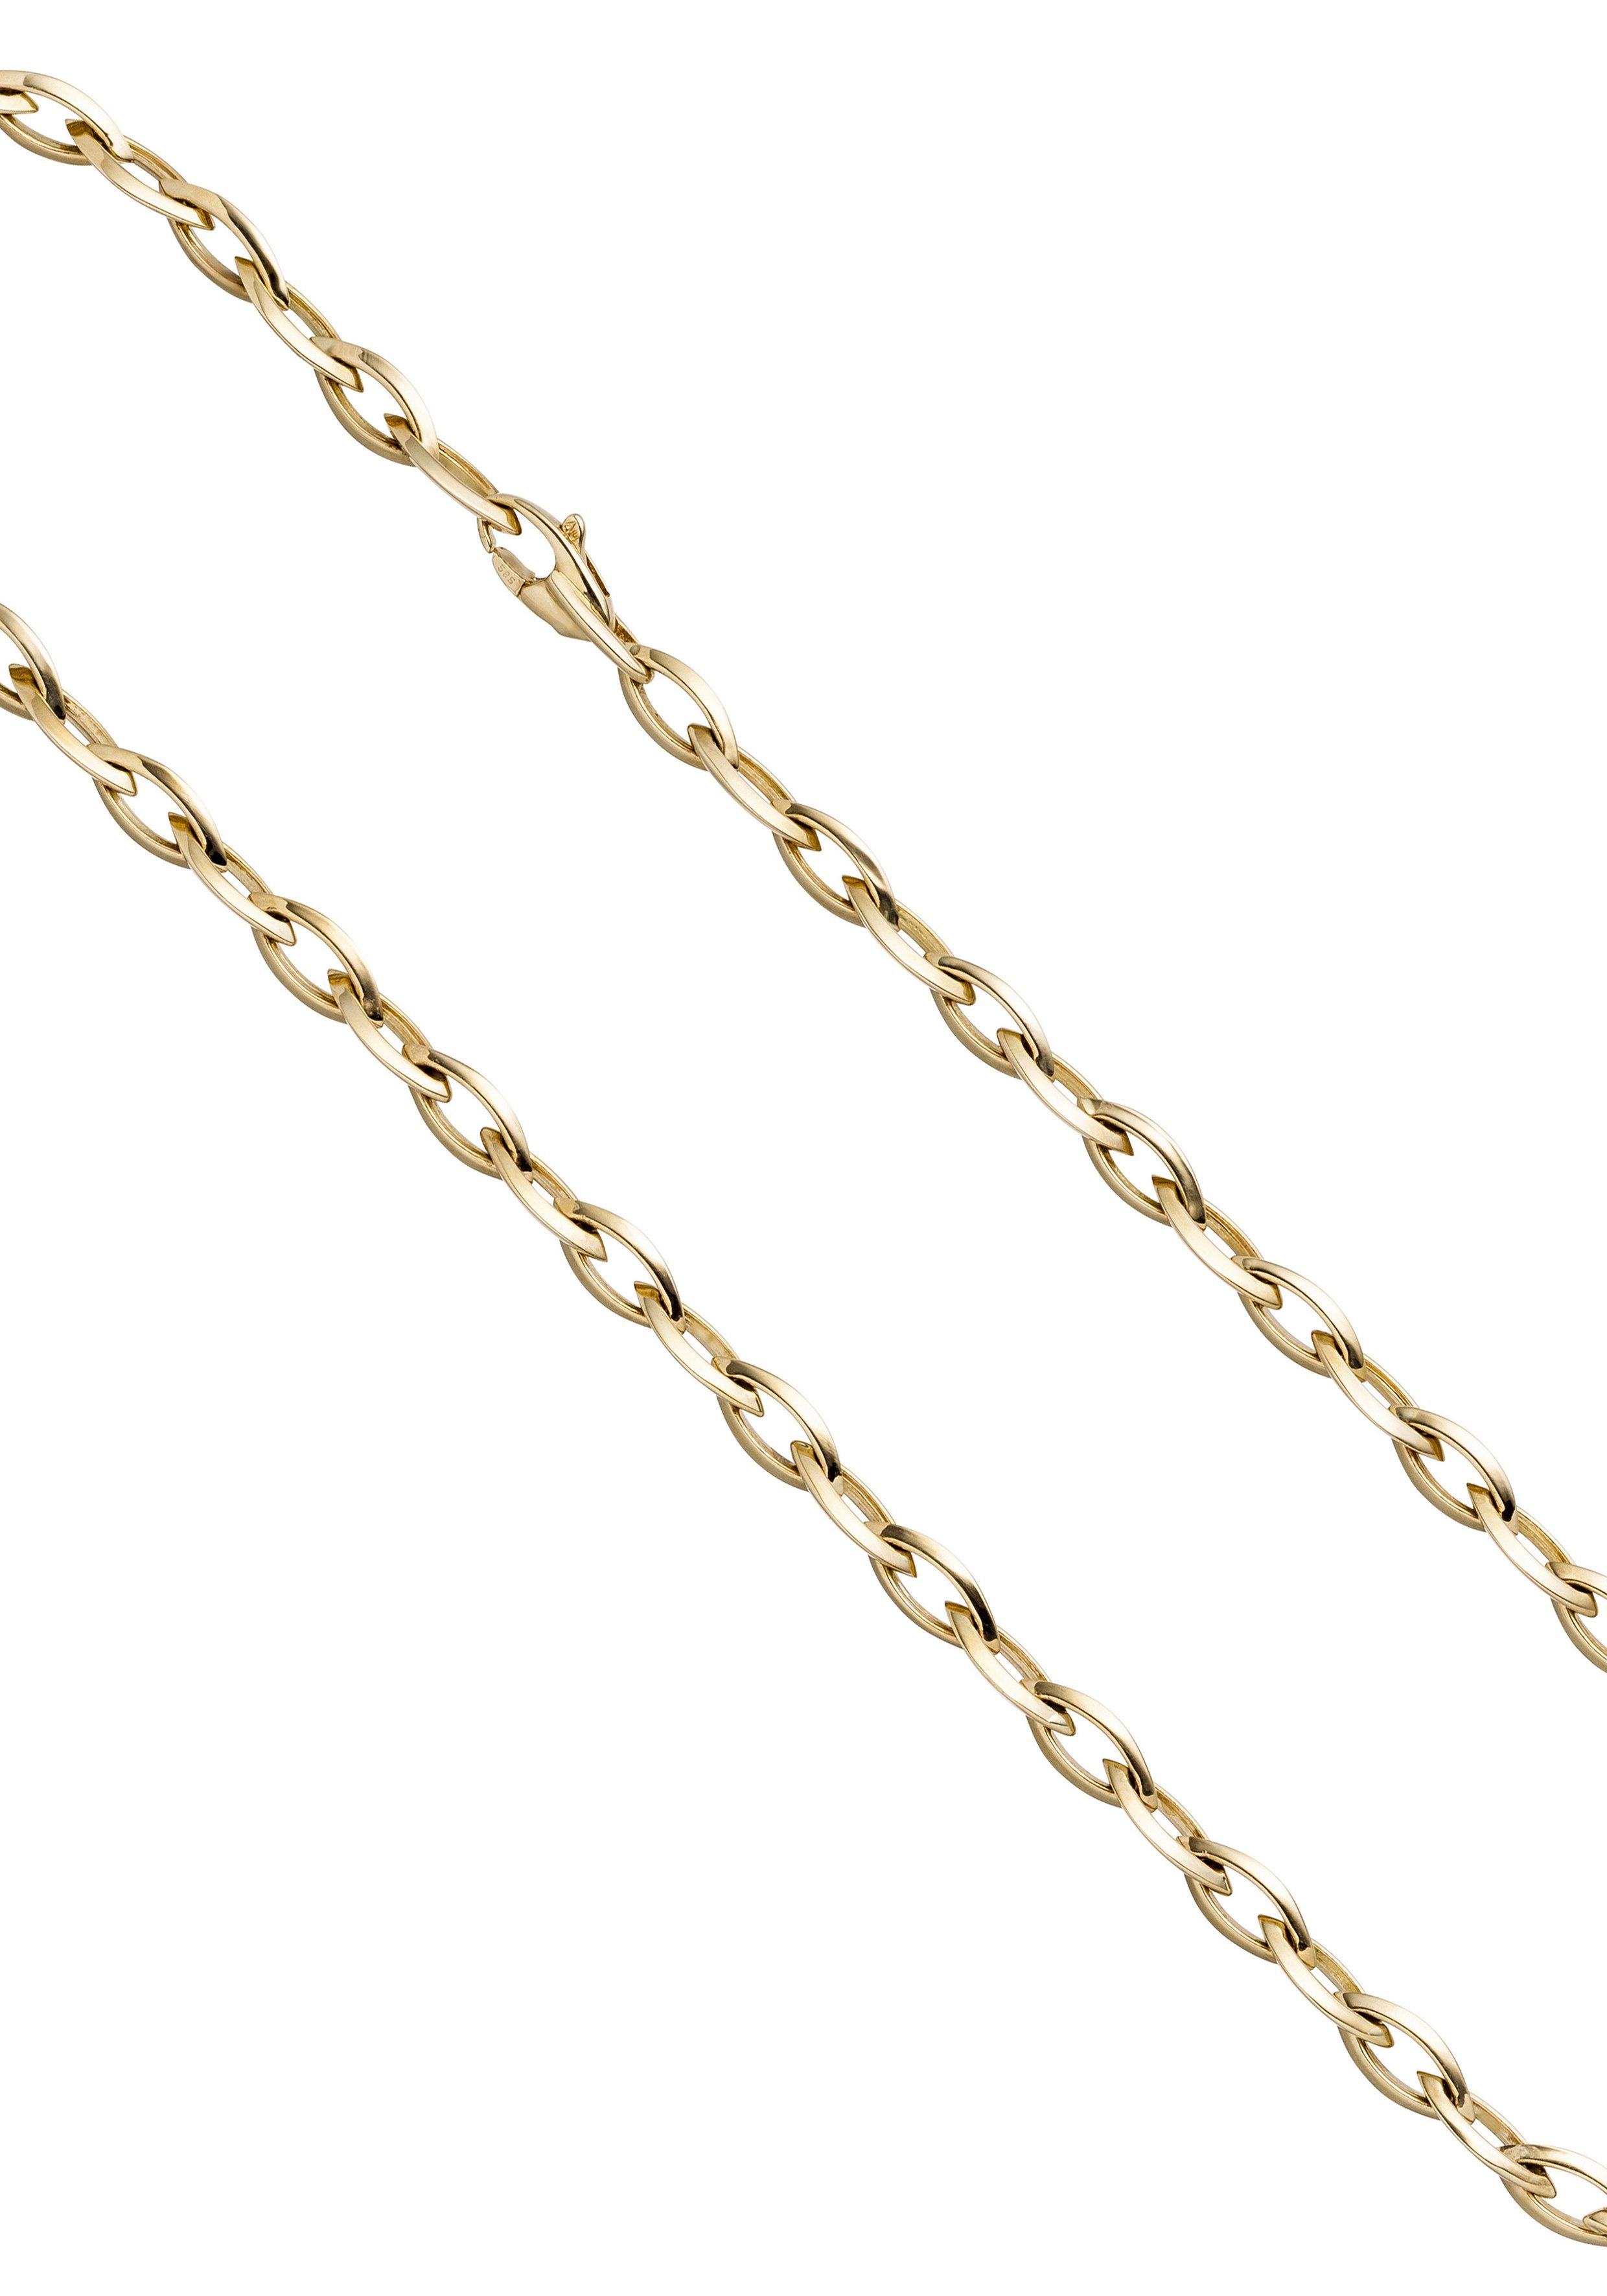 JOBO Goldkette, 585 Gold 45 cm, Mit Karabinerverschluss online kaufen | OTTO